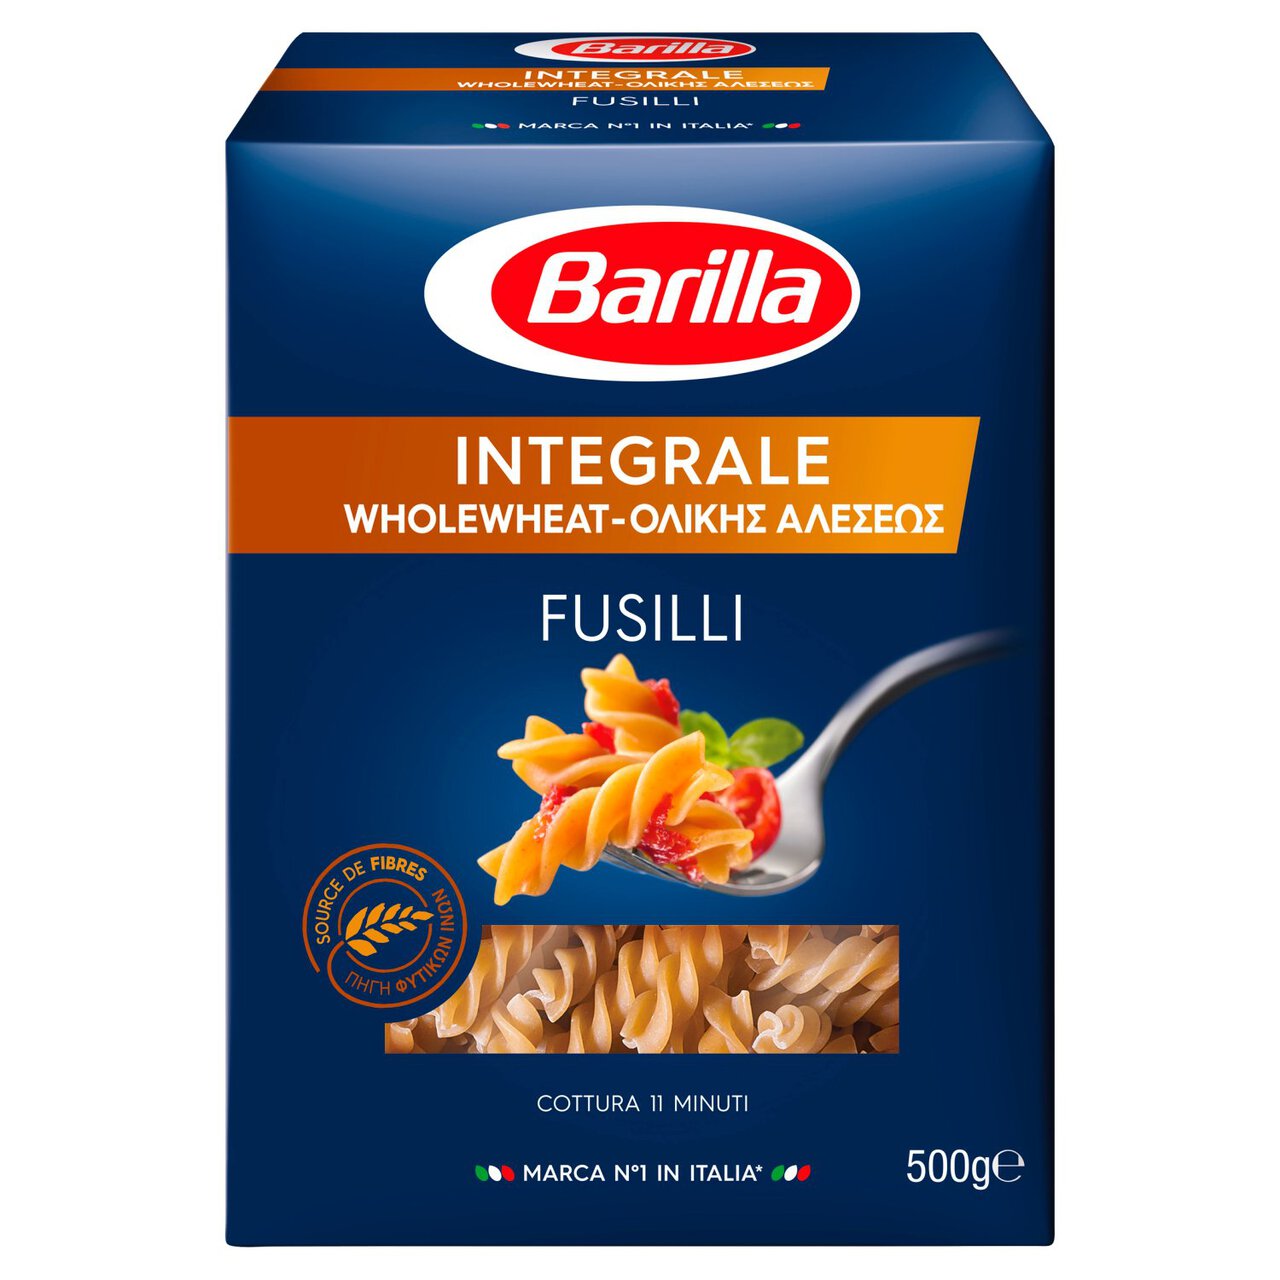 Barilla Whole Wheat Pasta Fusilli Wholegrain Pasta 500g